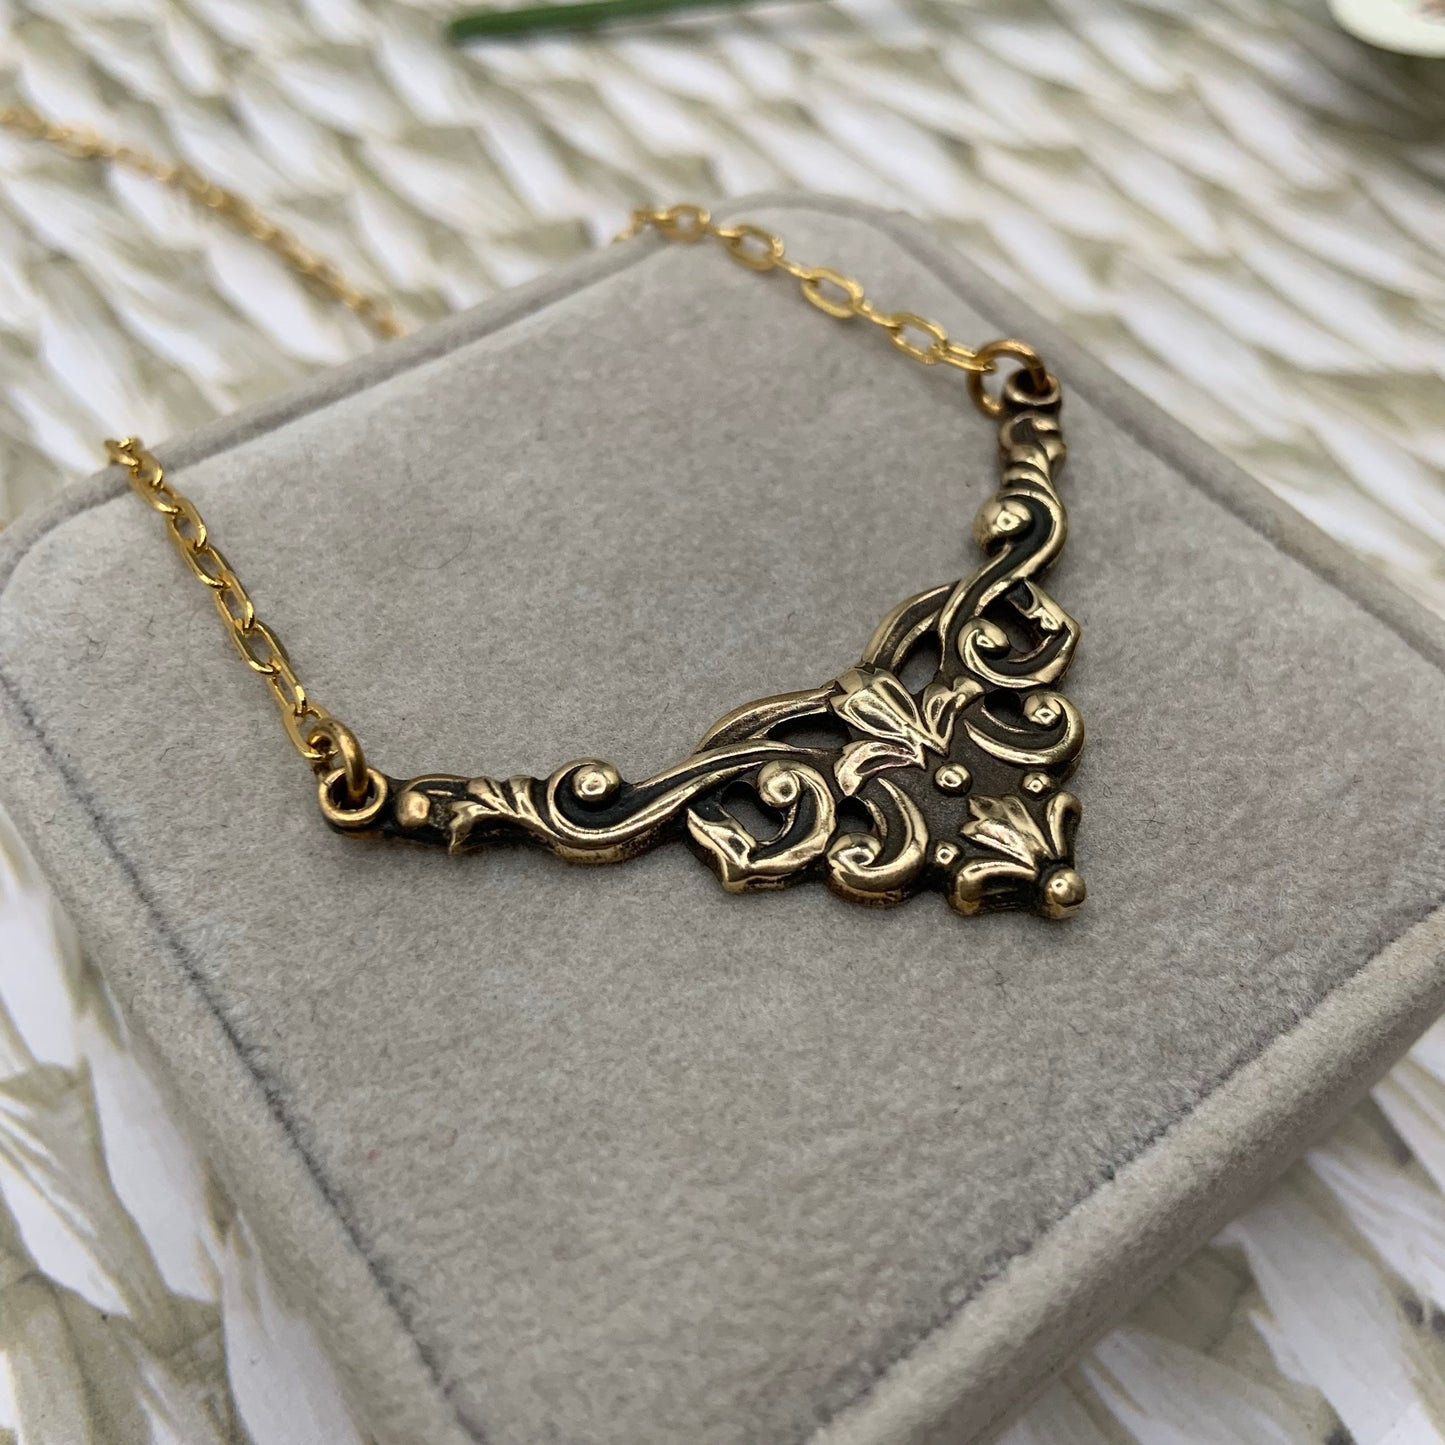 Antique brass Art Nouveau choker necklace